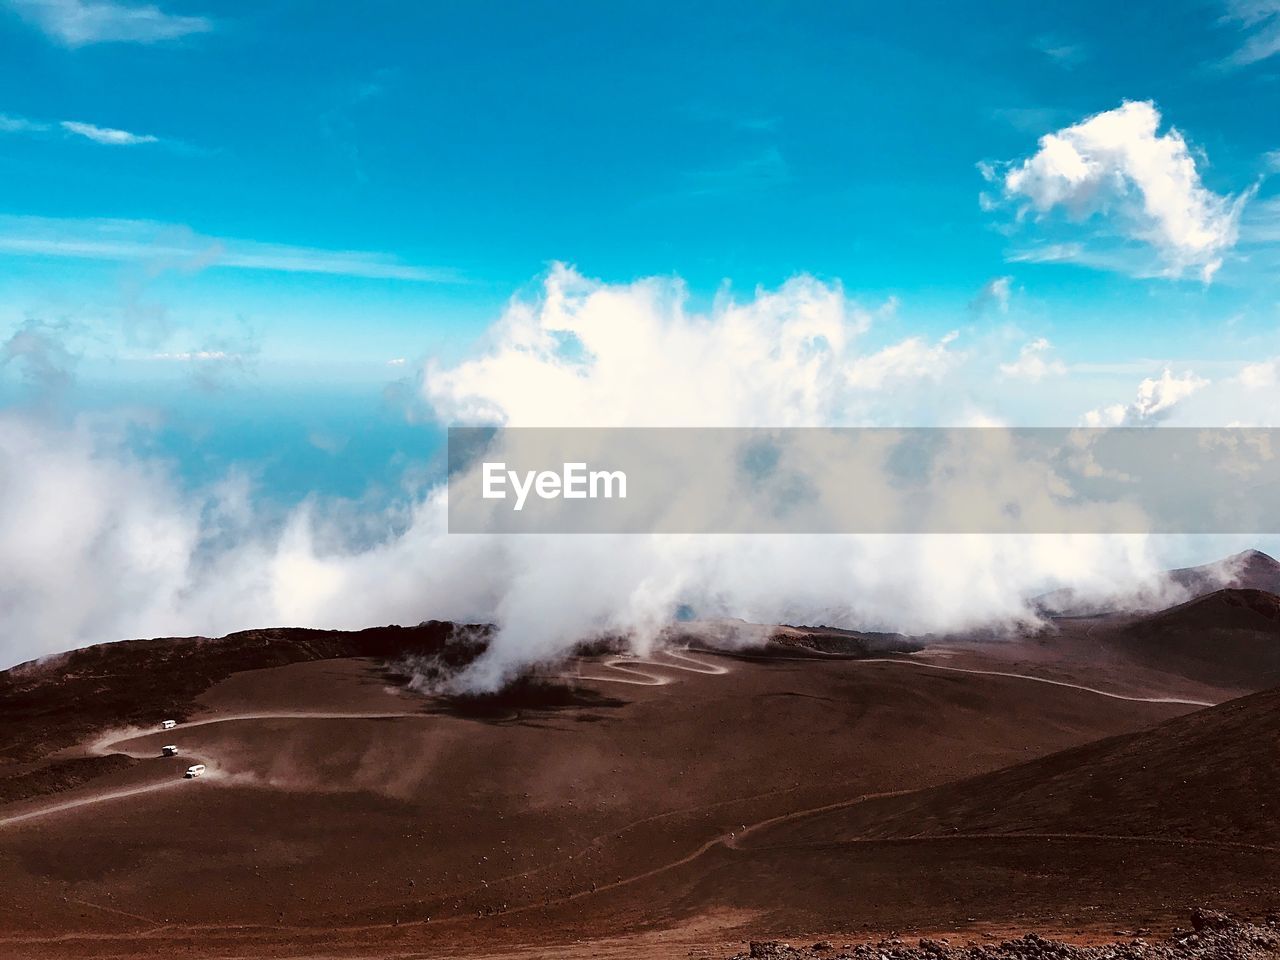 Etna, sicily italy